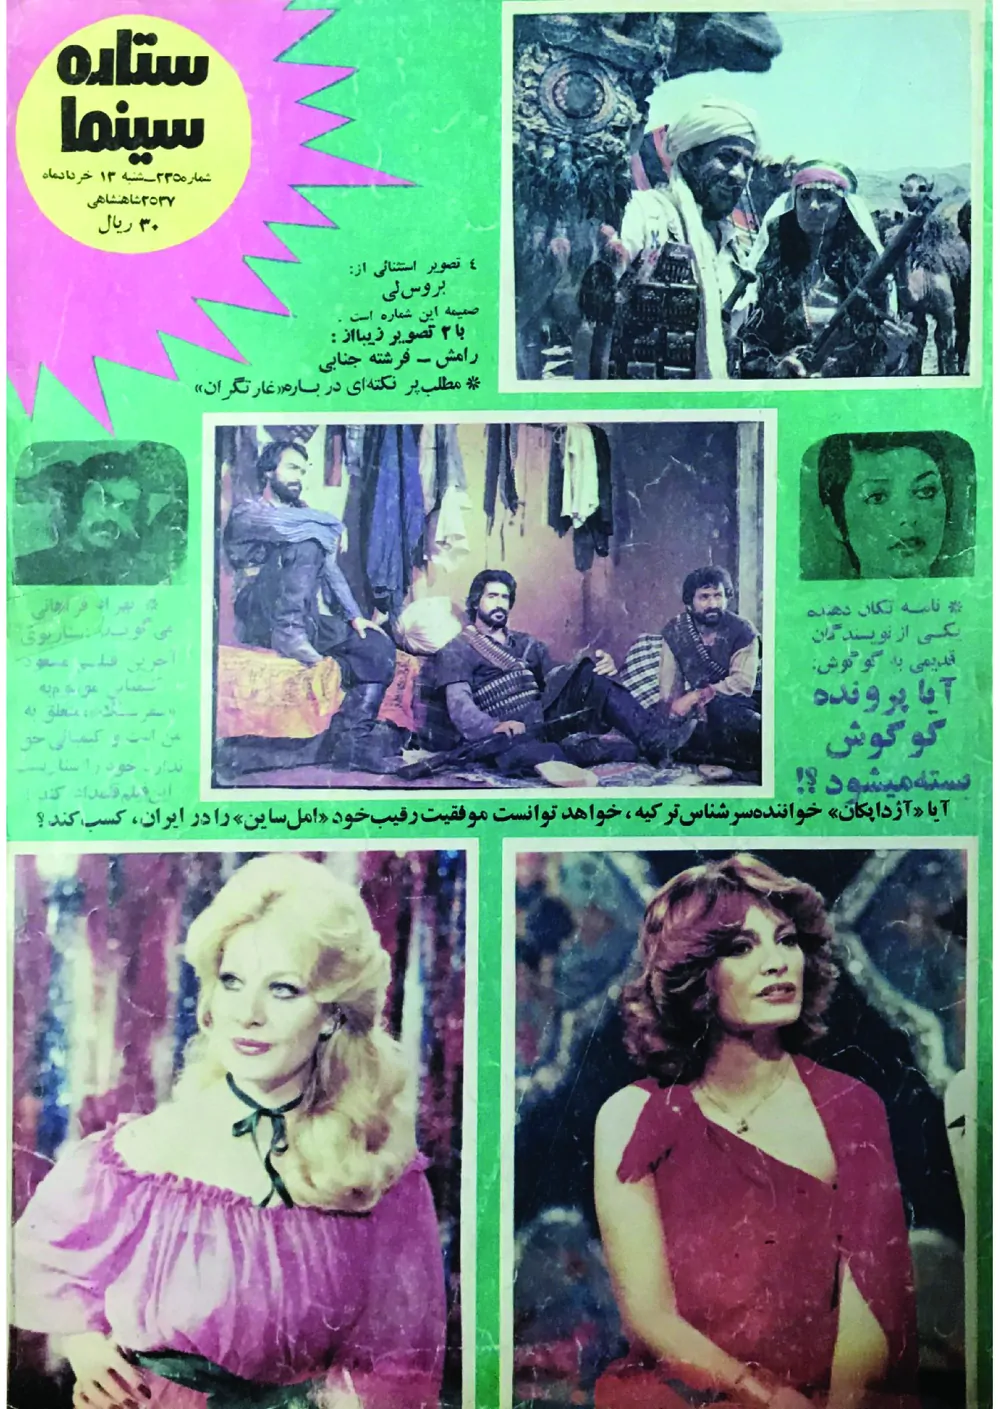 ستاره سینما - شماره ۲۳۵ - خرداد ۱۳۵۷